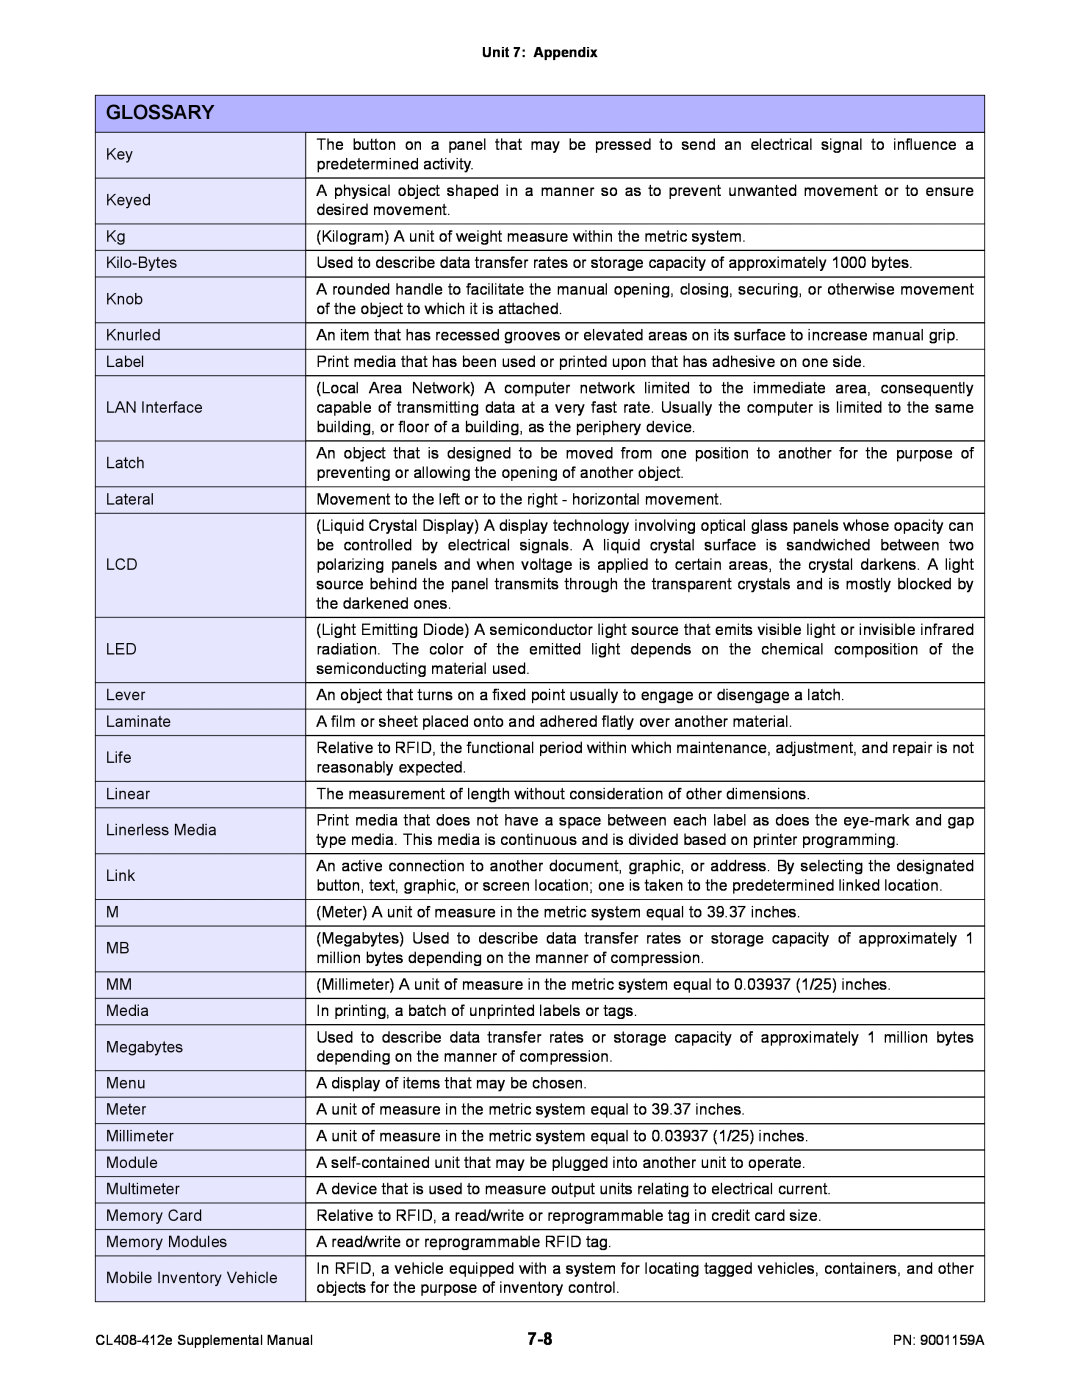 SATO CL408-412e manual Glossary, predetermined activity 